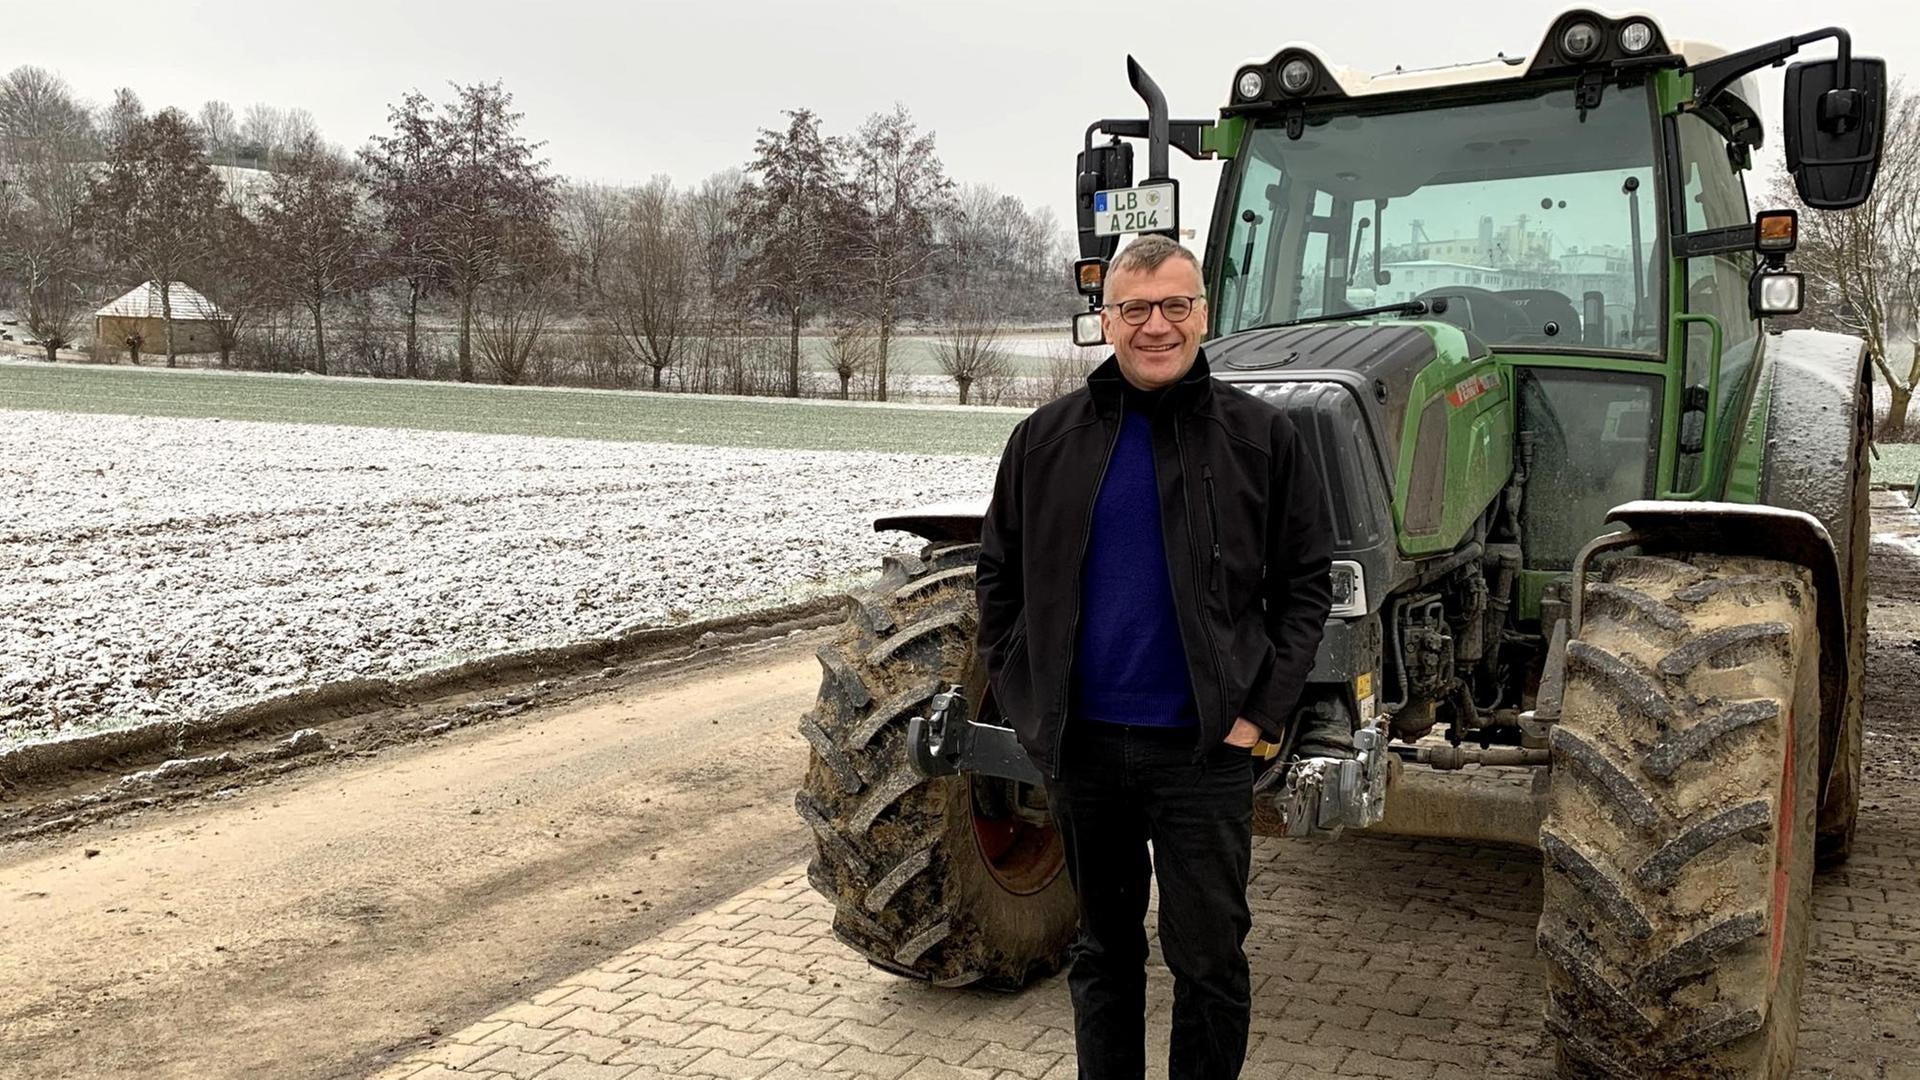 Marcus Arzt ist Ökobauer in Ditzingen und Biolandchef in Baden-Württemberg. Er steht neben seinem schneebedecktem Acker und grünem Traktor im Winter.